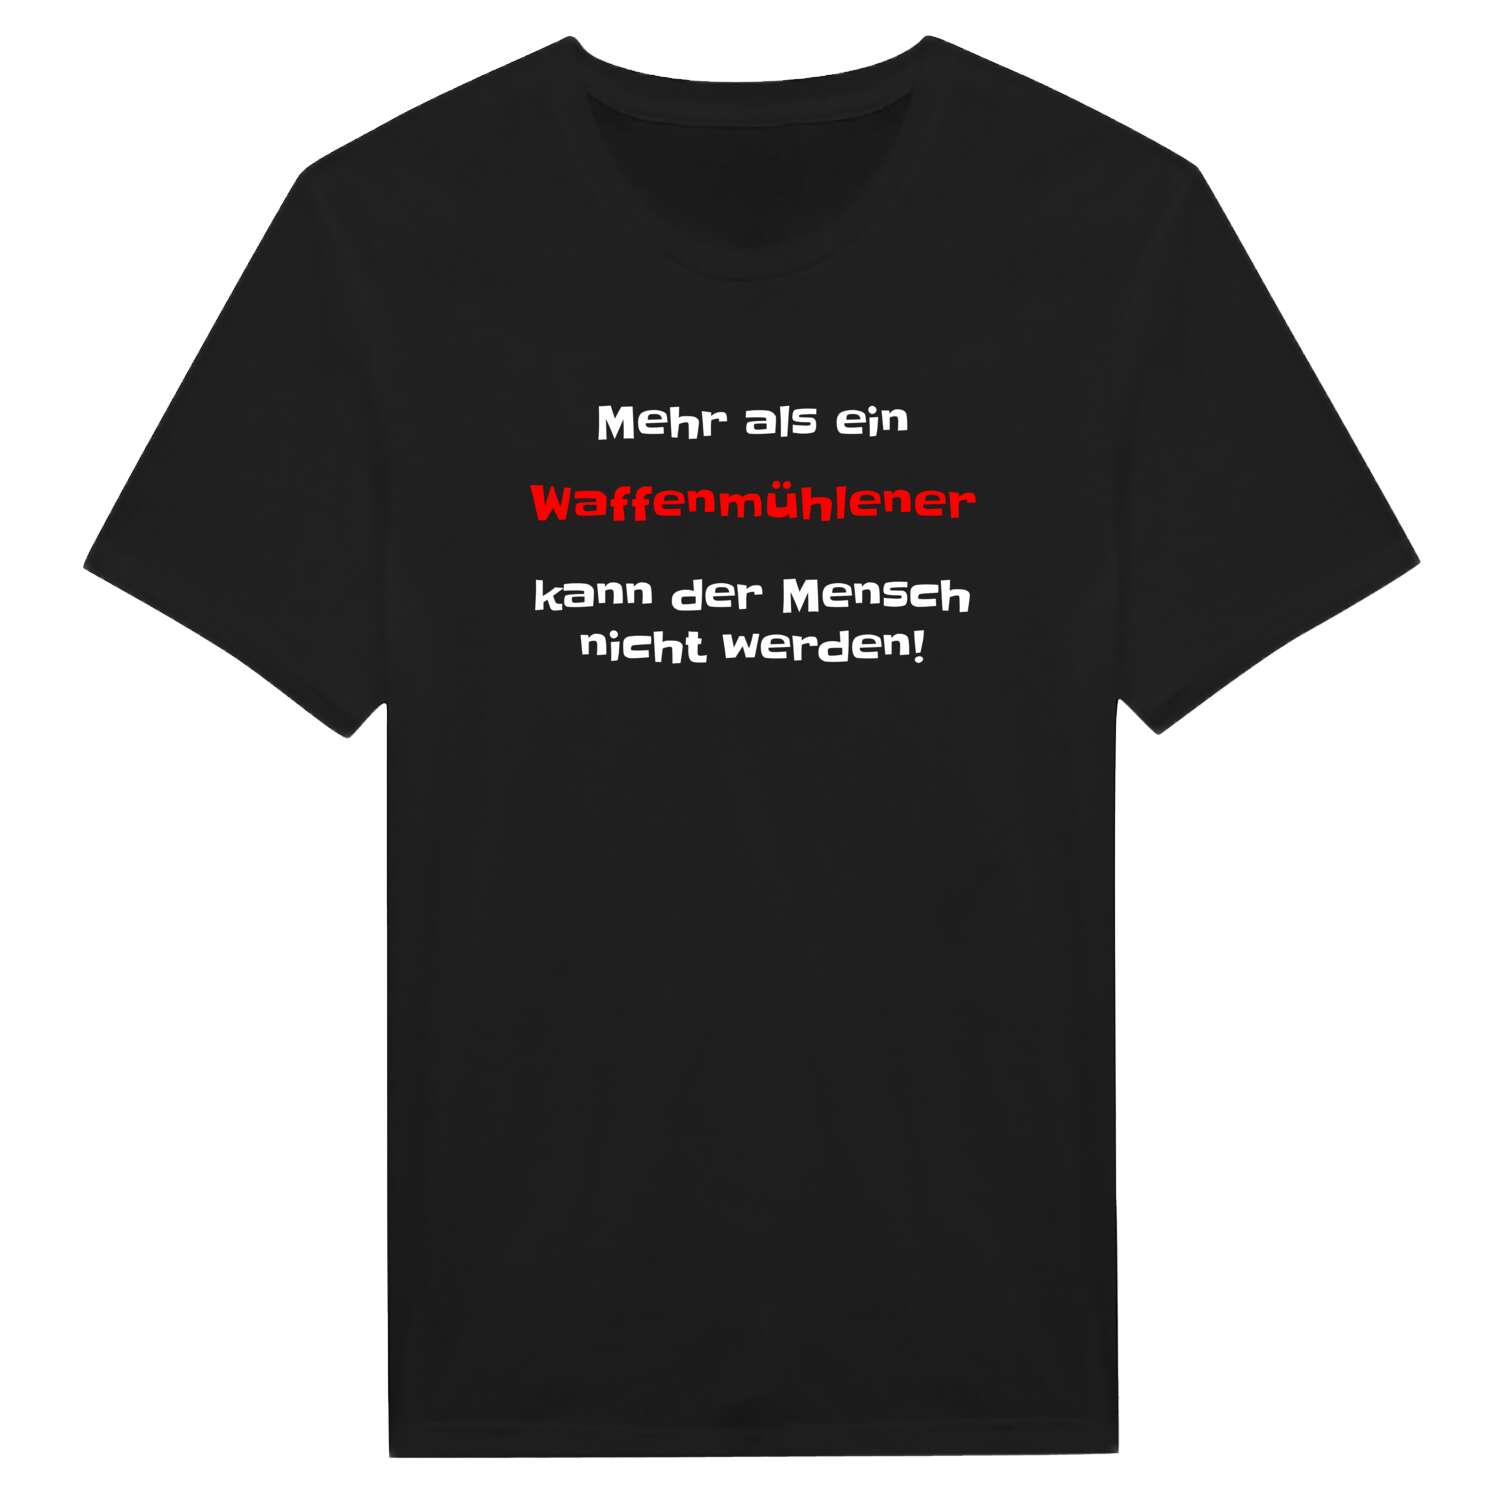 Waffenmühle T-Shirt »Mehr als ein«